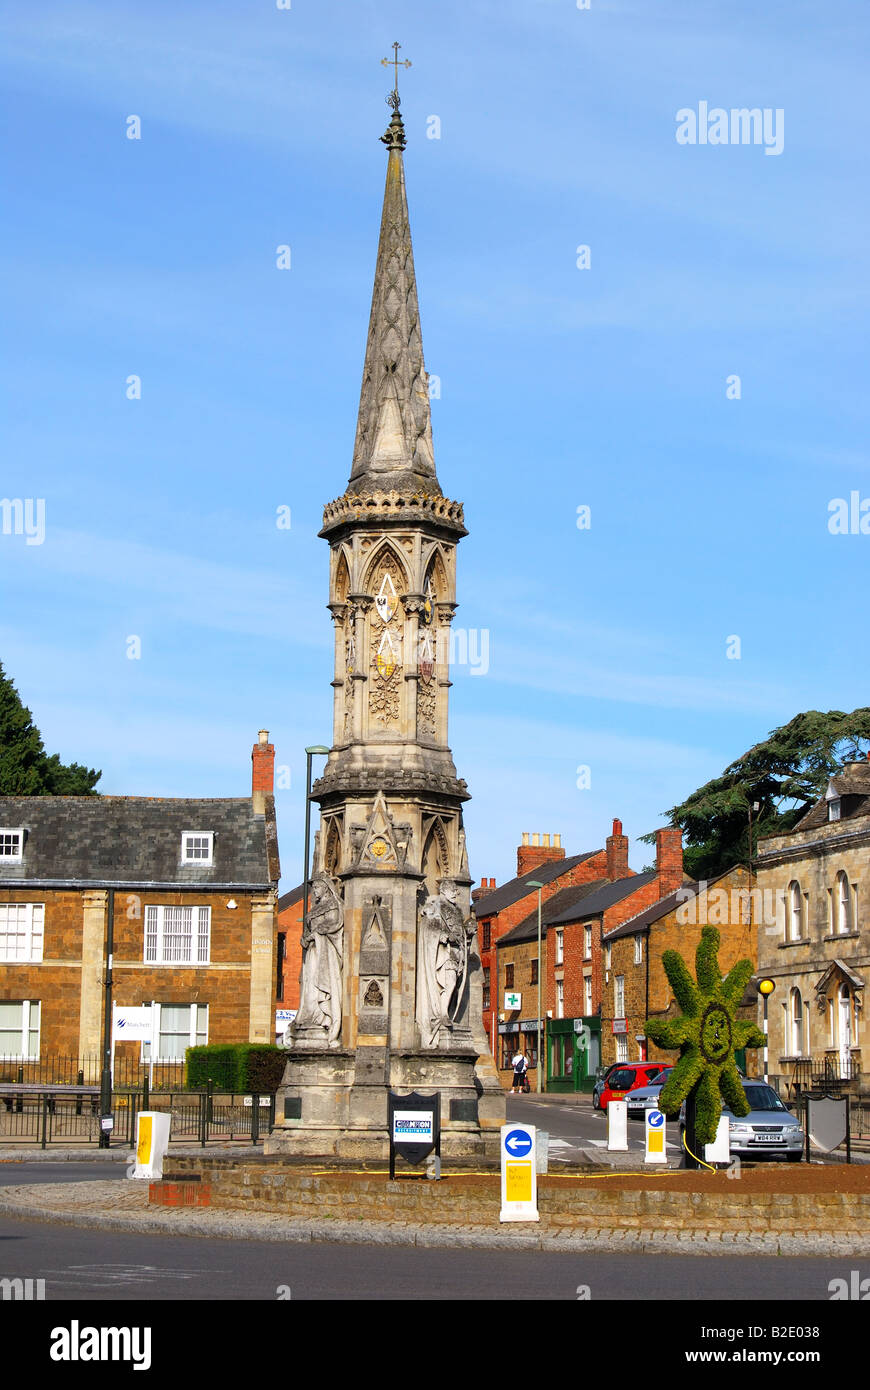 Banbury Cross, Banbury, Oxfordshire, England, United Kingdom Stock Photo